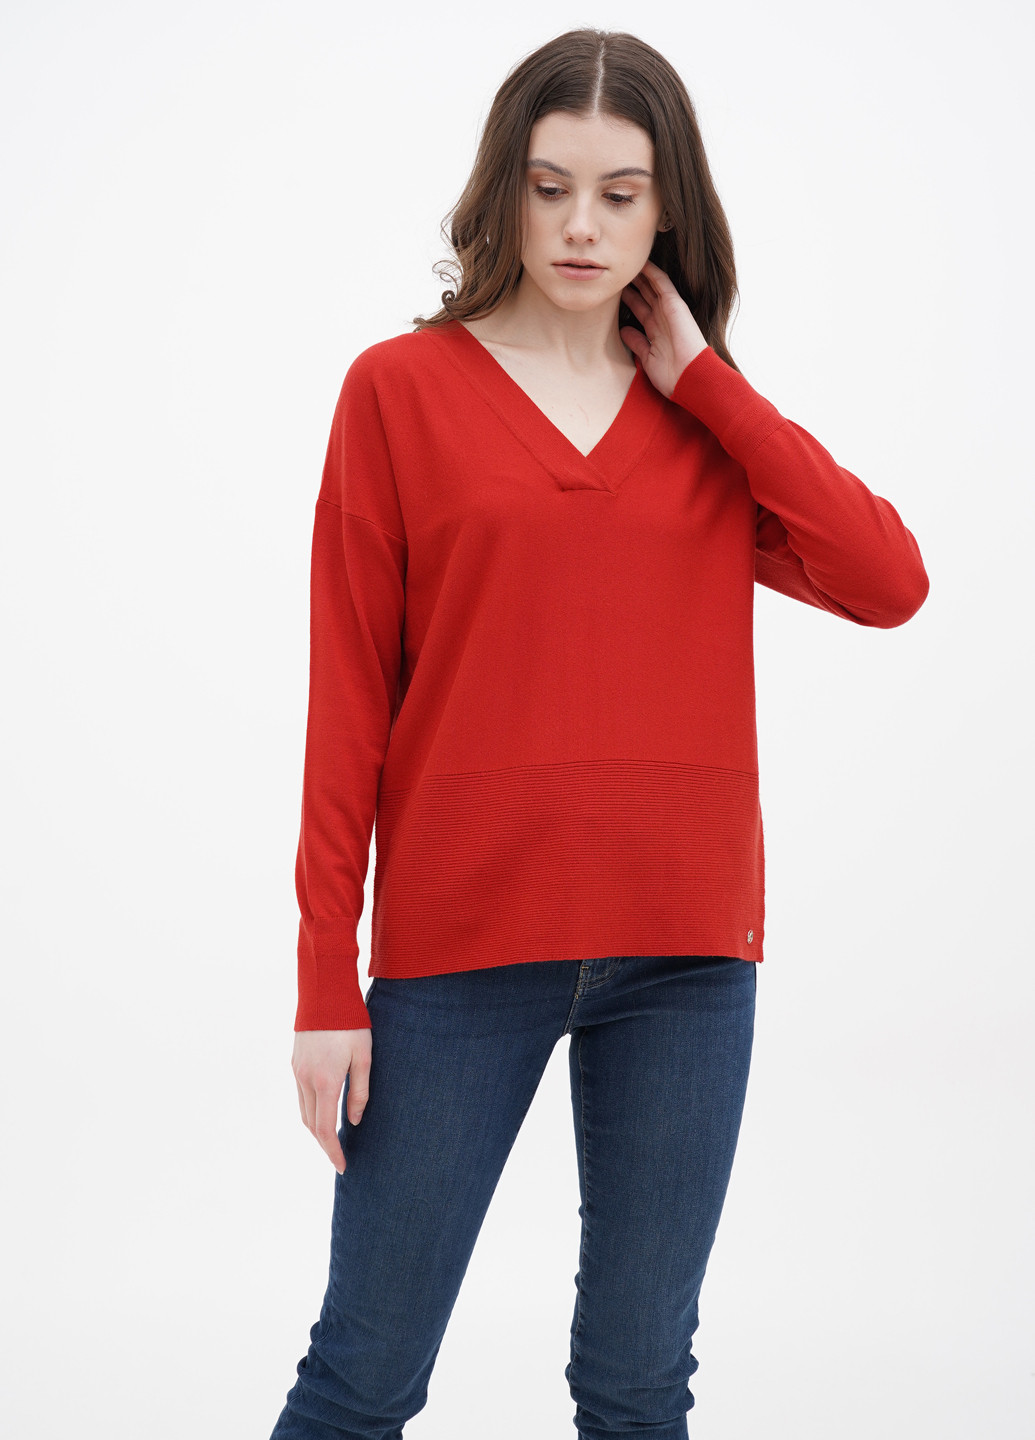 Красный демисезонный пуловер пуловер S.Oliver